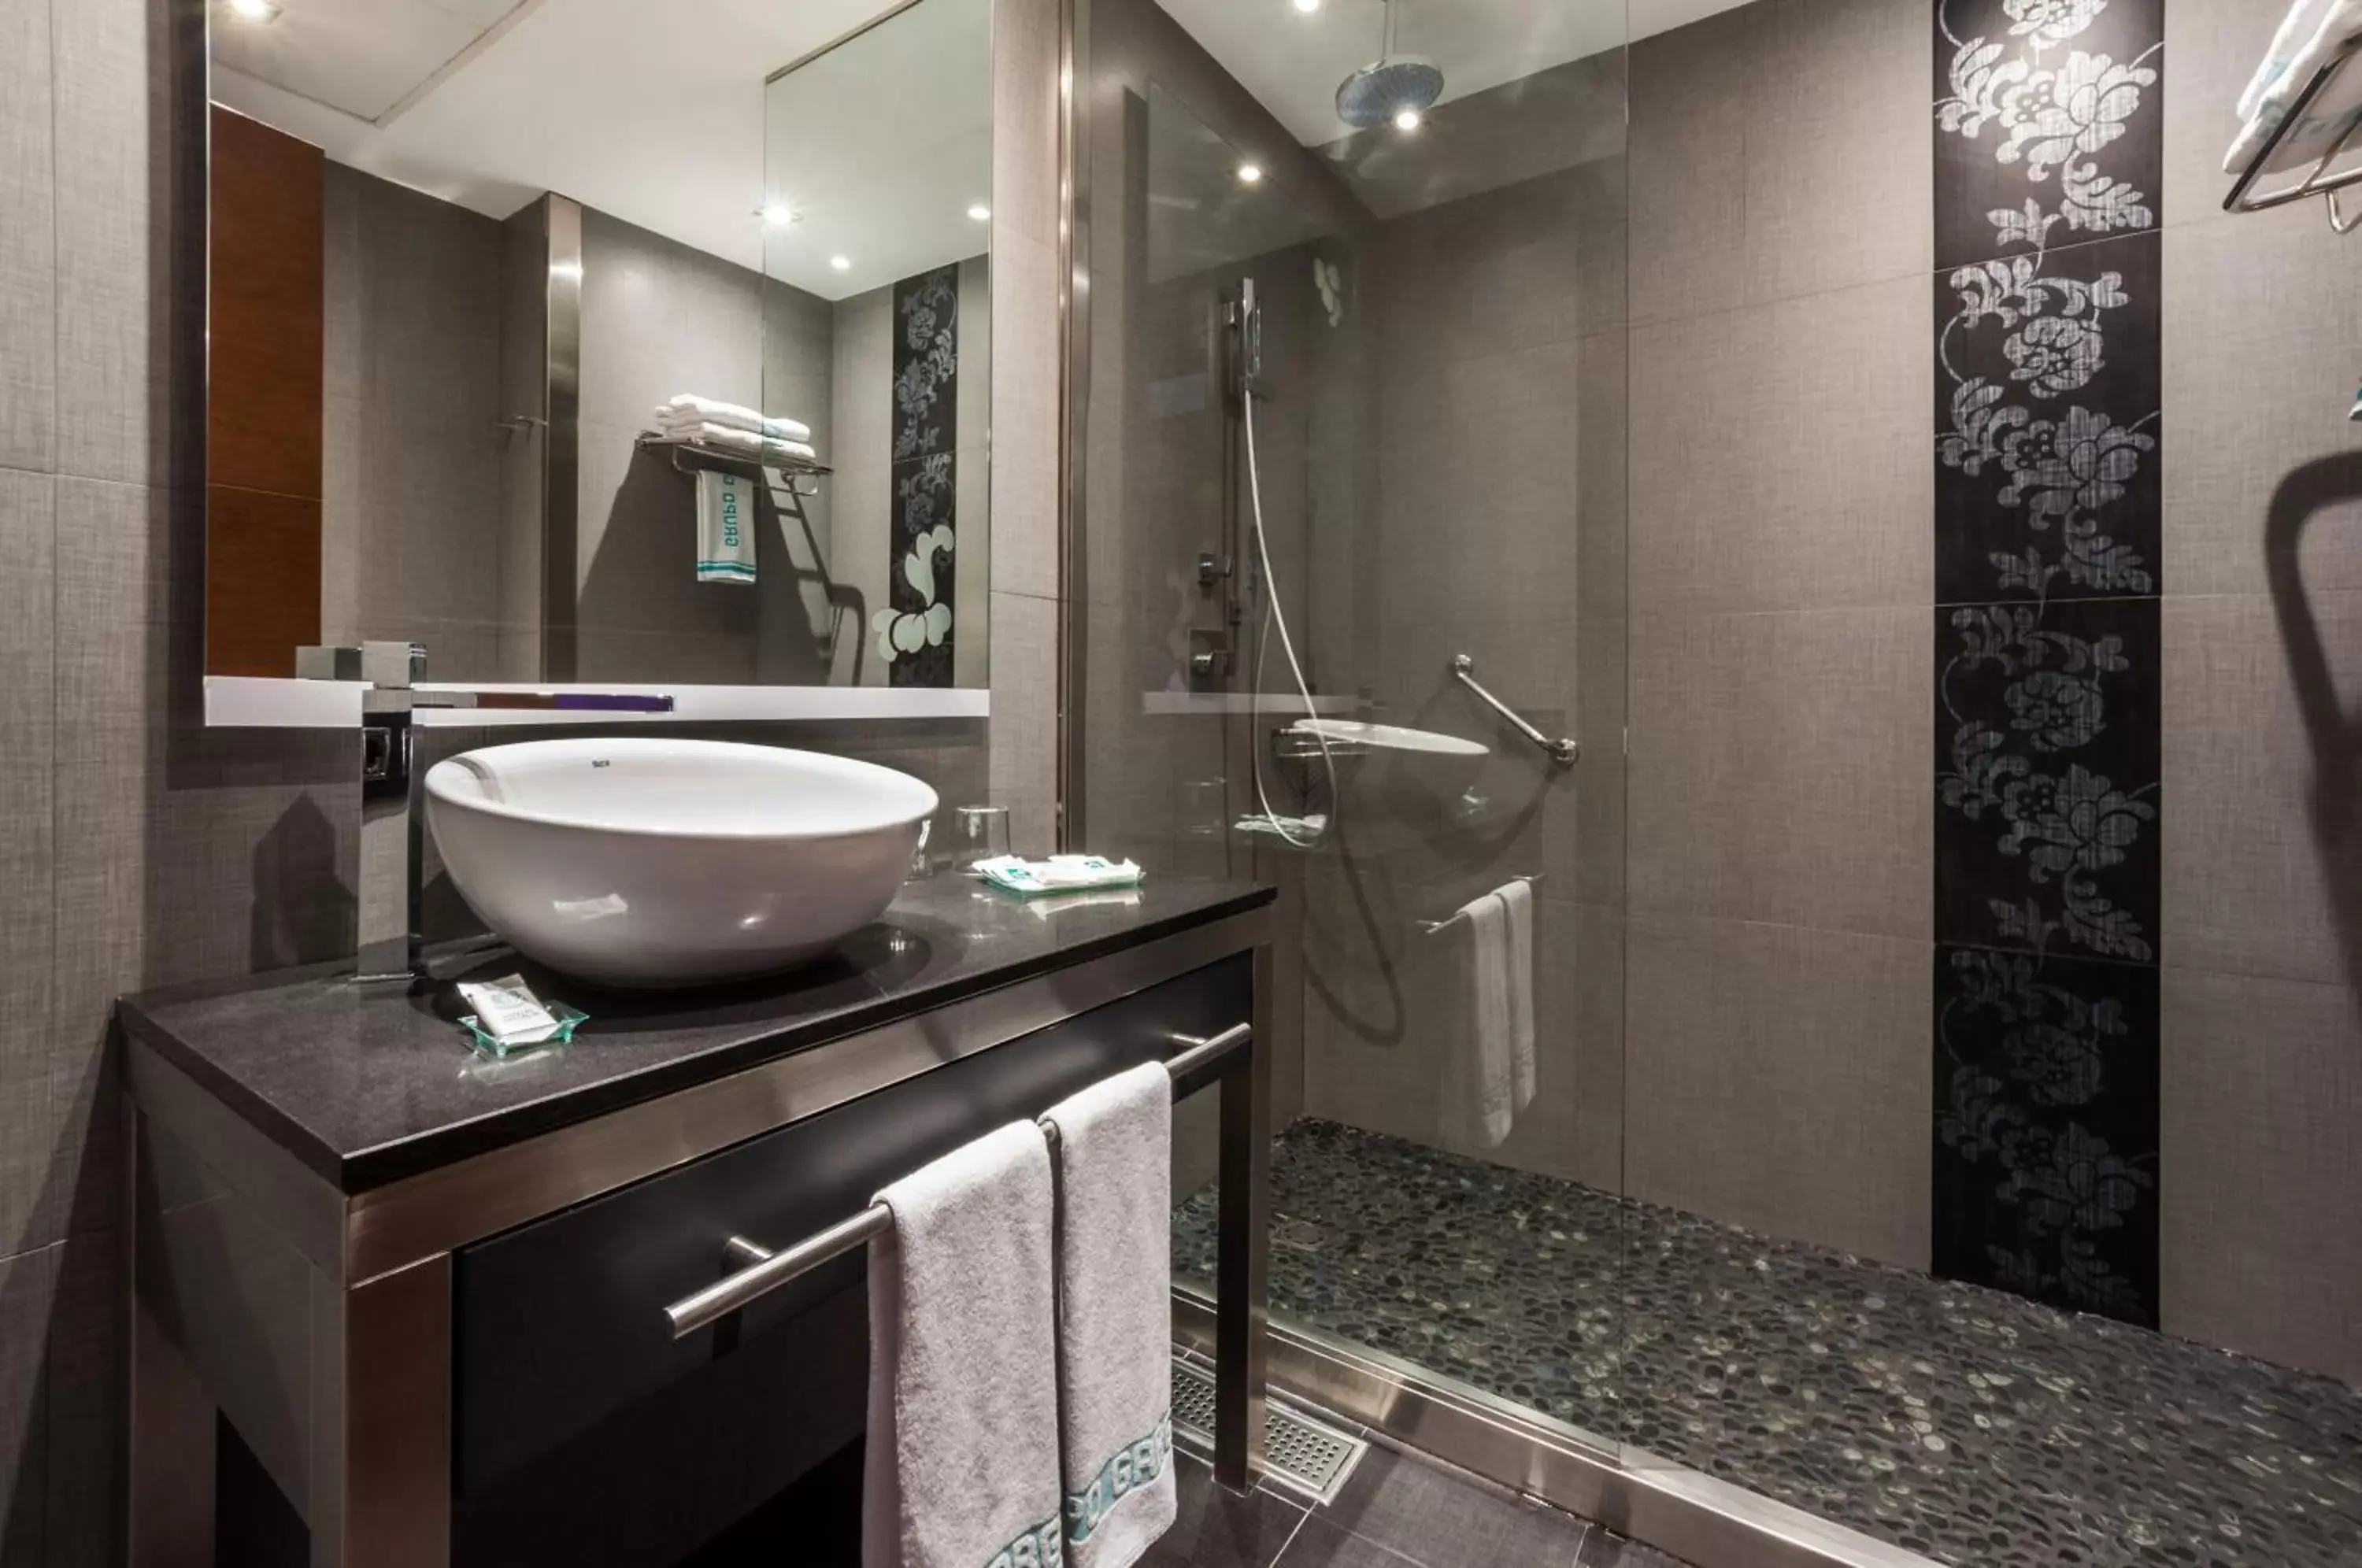 Toilet, Bathroom in Barcelona Hotel Colonial